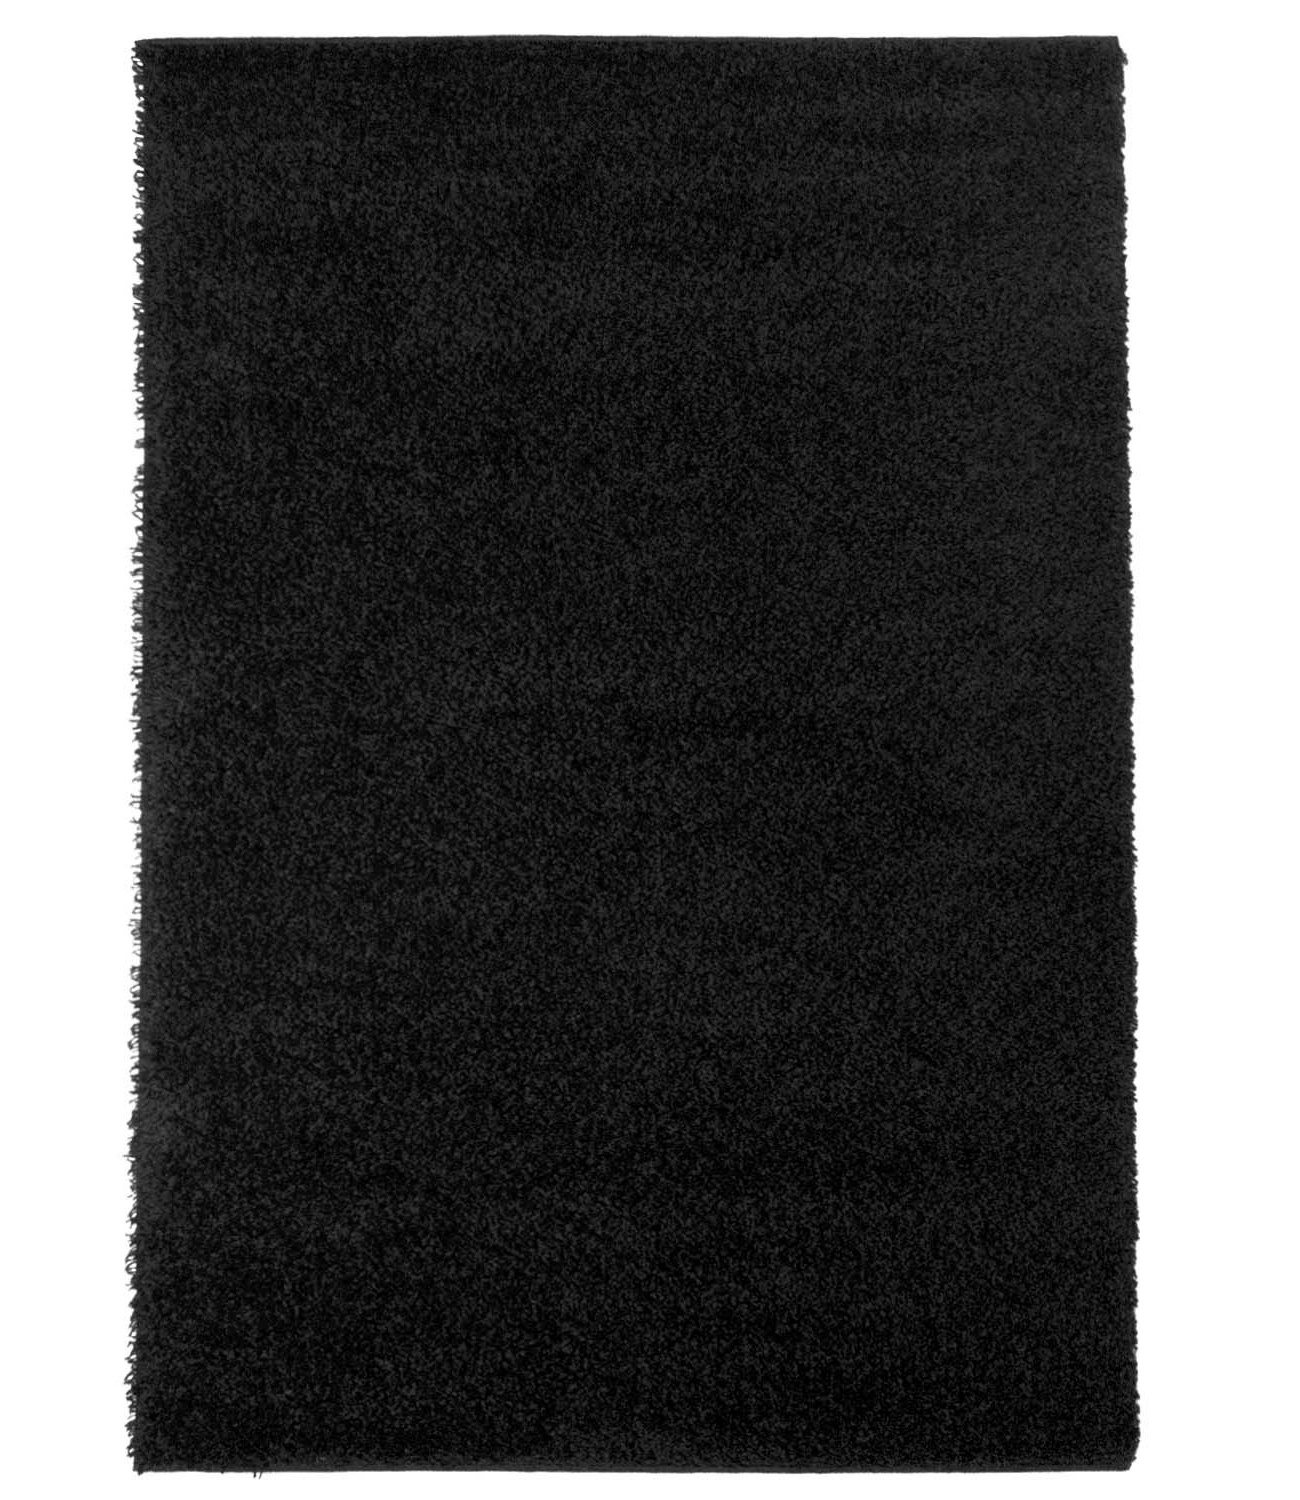 Trim matta rya ryamatta svart rund lång lugg kort 60x120 cm 80x 150 cm 140x200 cm 160x230 cm 200x300 cm